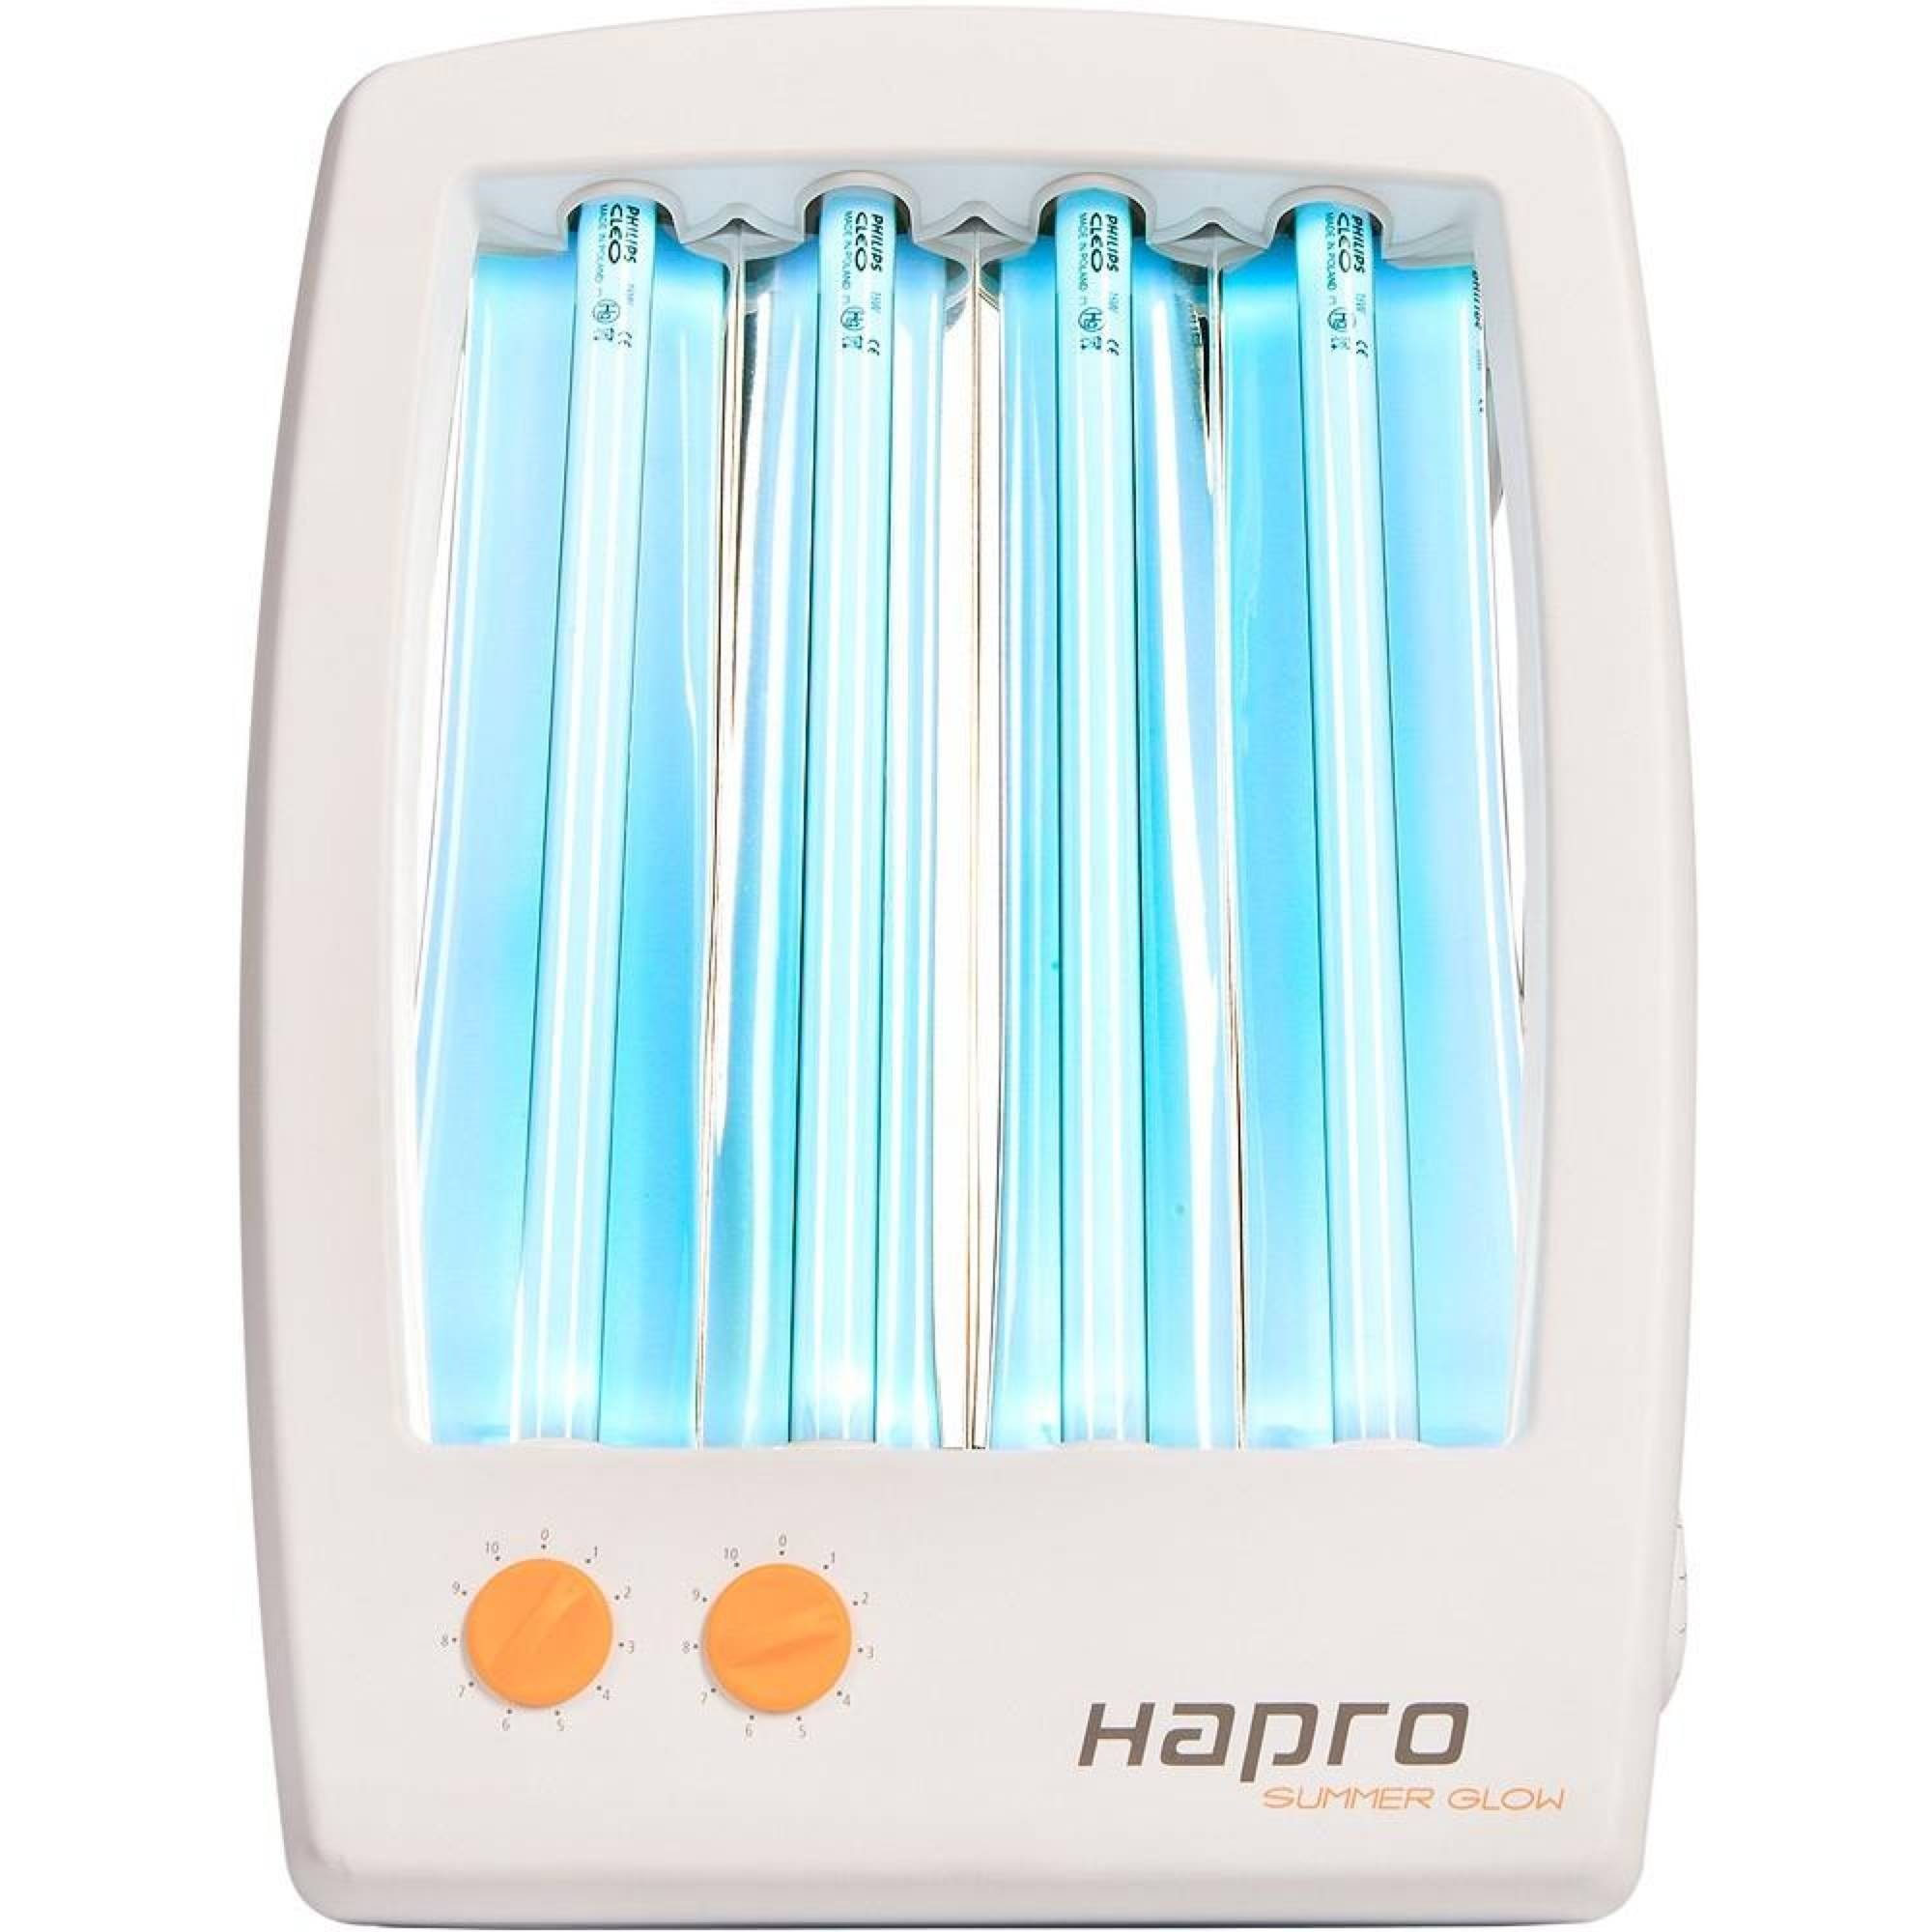 Gesichtsbräuner HB175 Hapro Glow Summer Gesichtssolarium Hapro